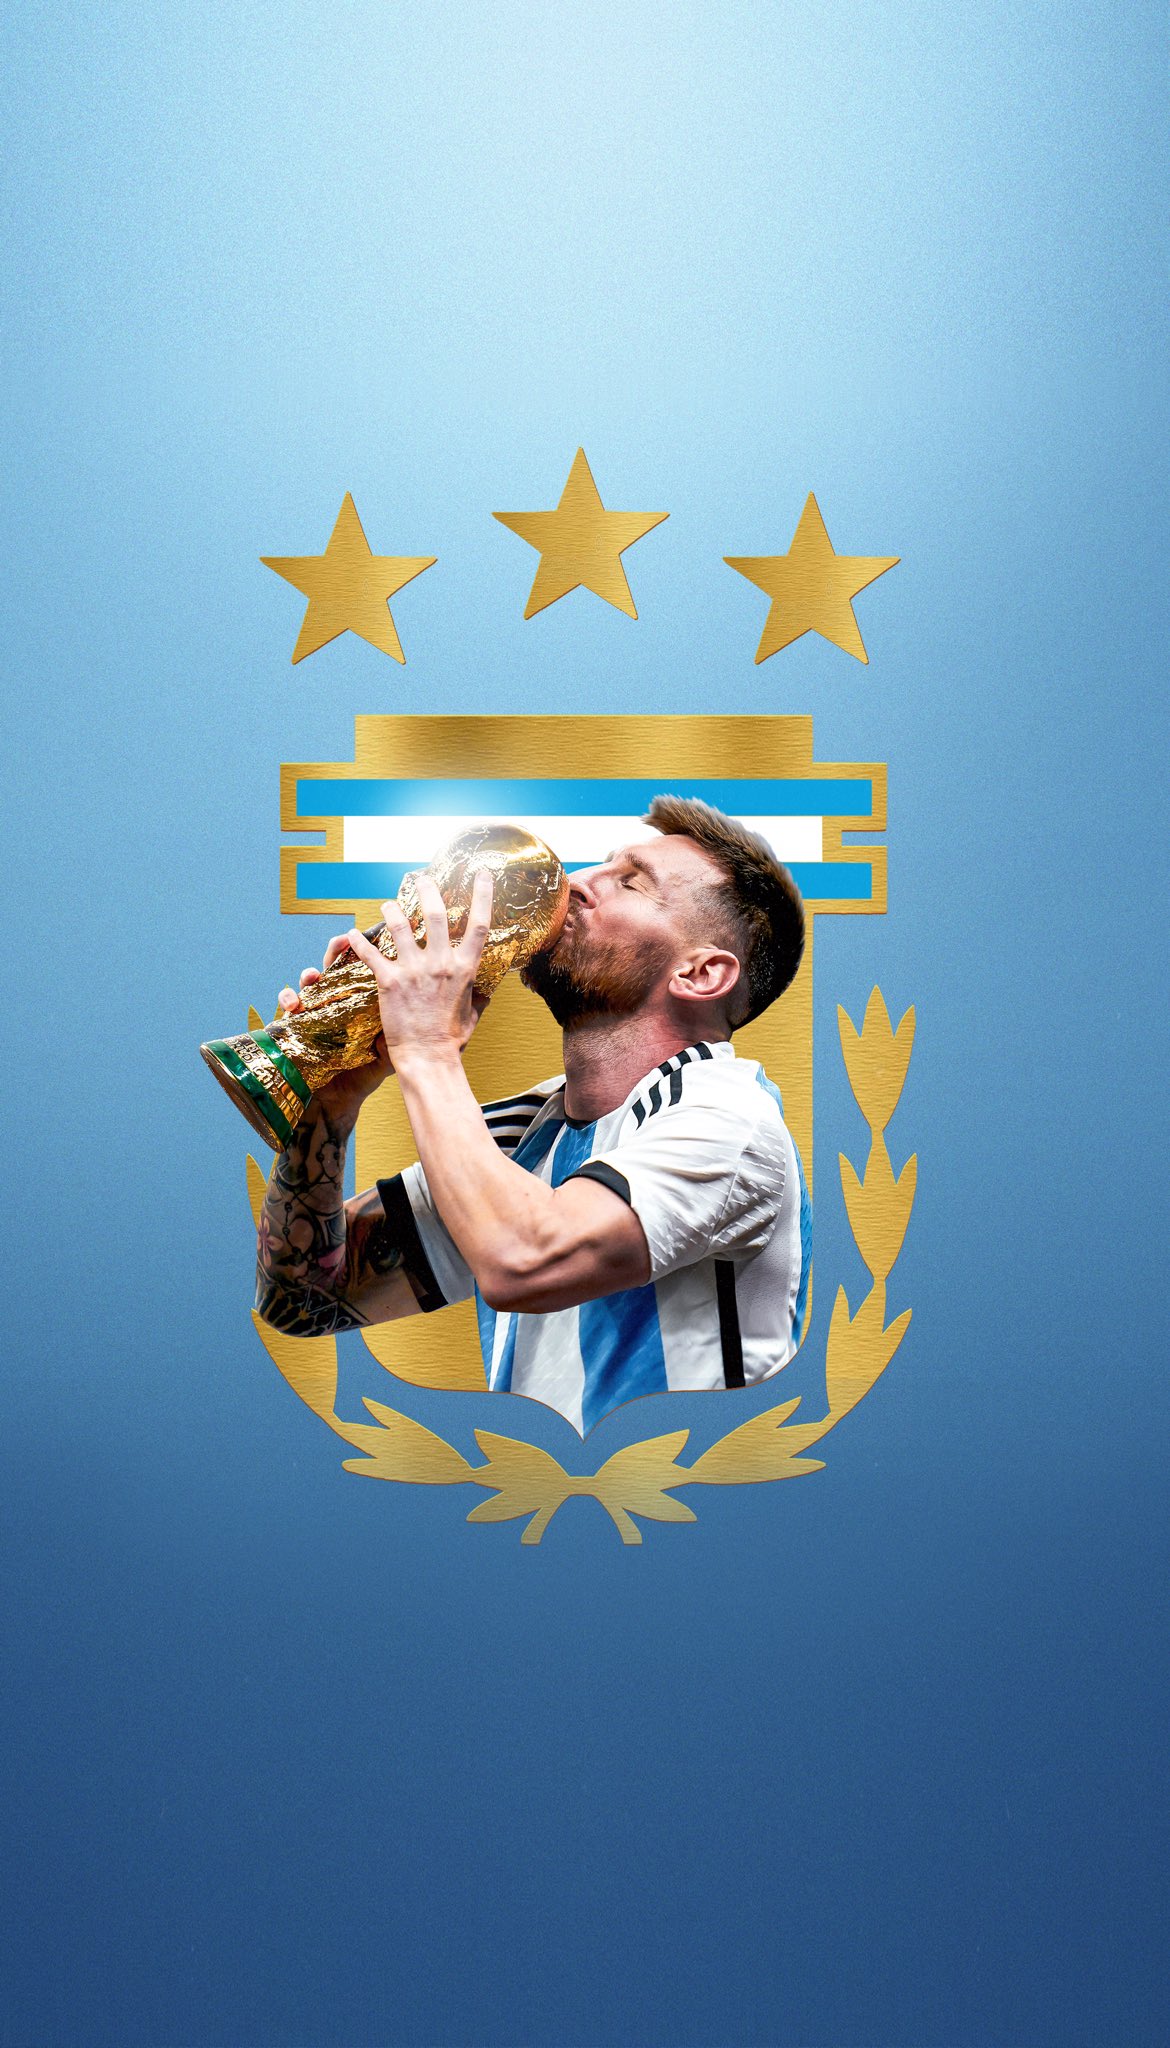 Messi - Xem ảnh của Messi để tận hưởng sự tài năng và kỹ thuật huyền thoại của cầu thủ. Hãy sống lại khoảnh khắc tuyệt vời của một ngôi sao bóng đá thế giới mỗi khi nhìn vào hình ảnh anh ấy.